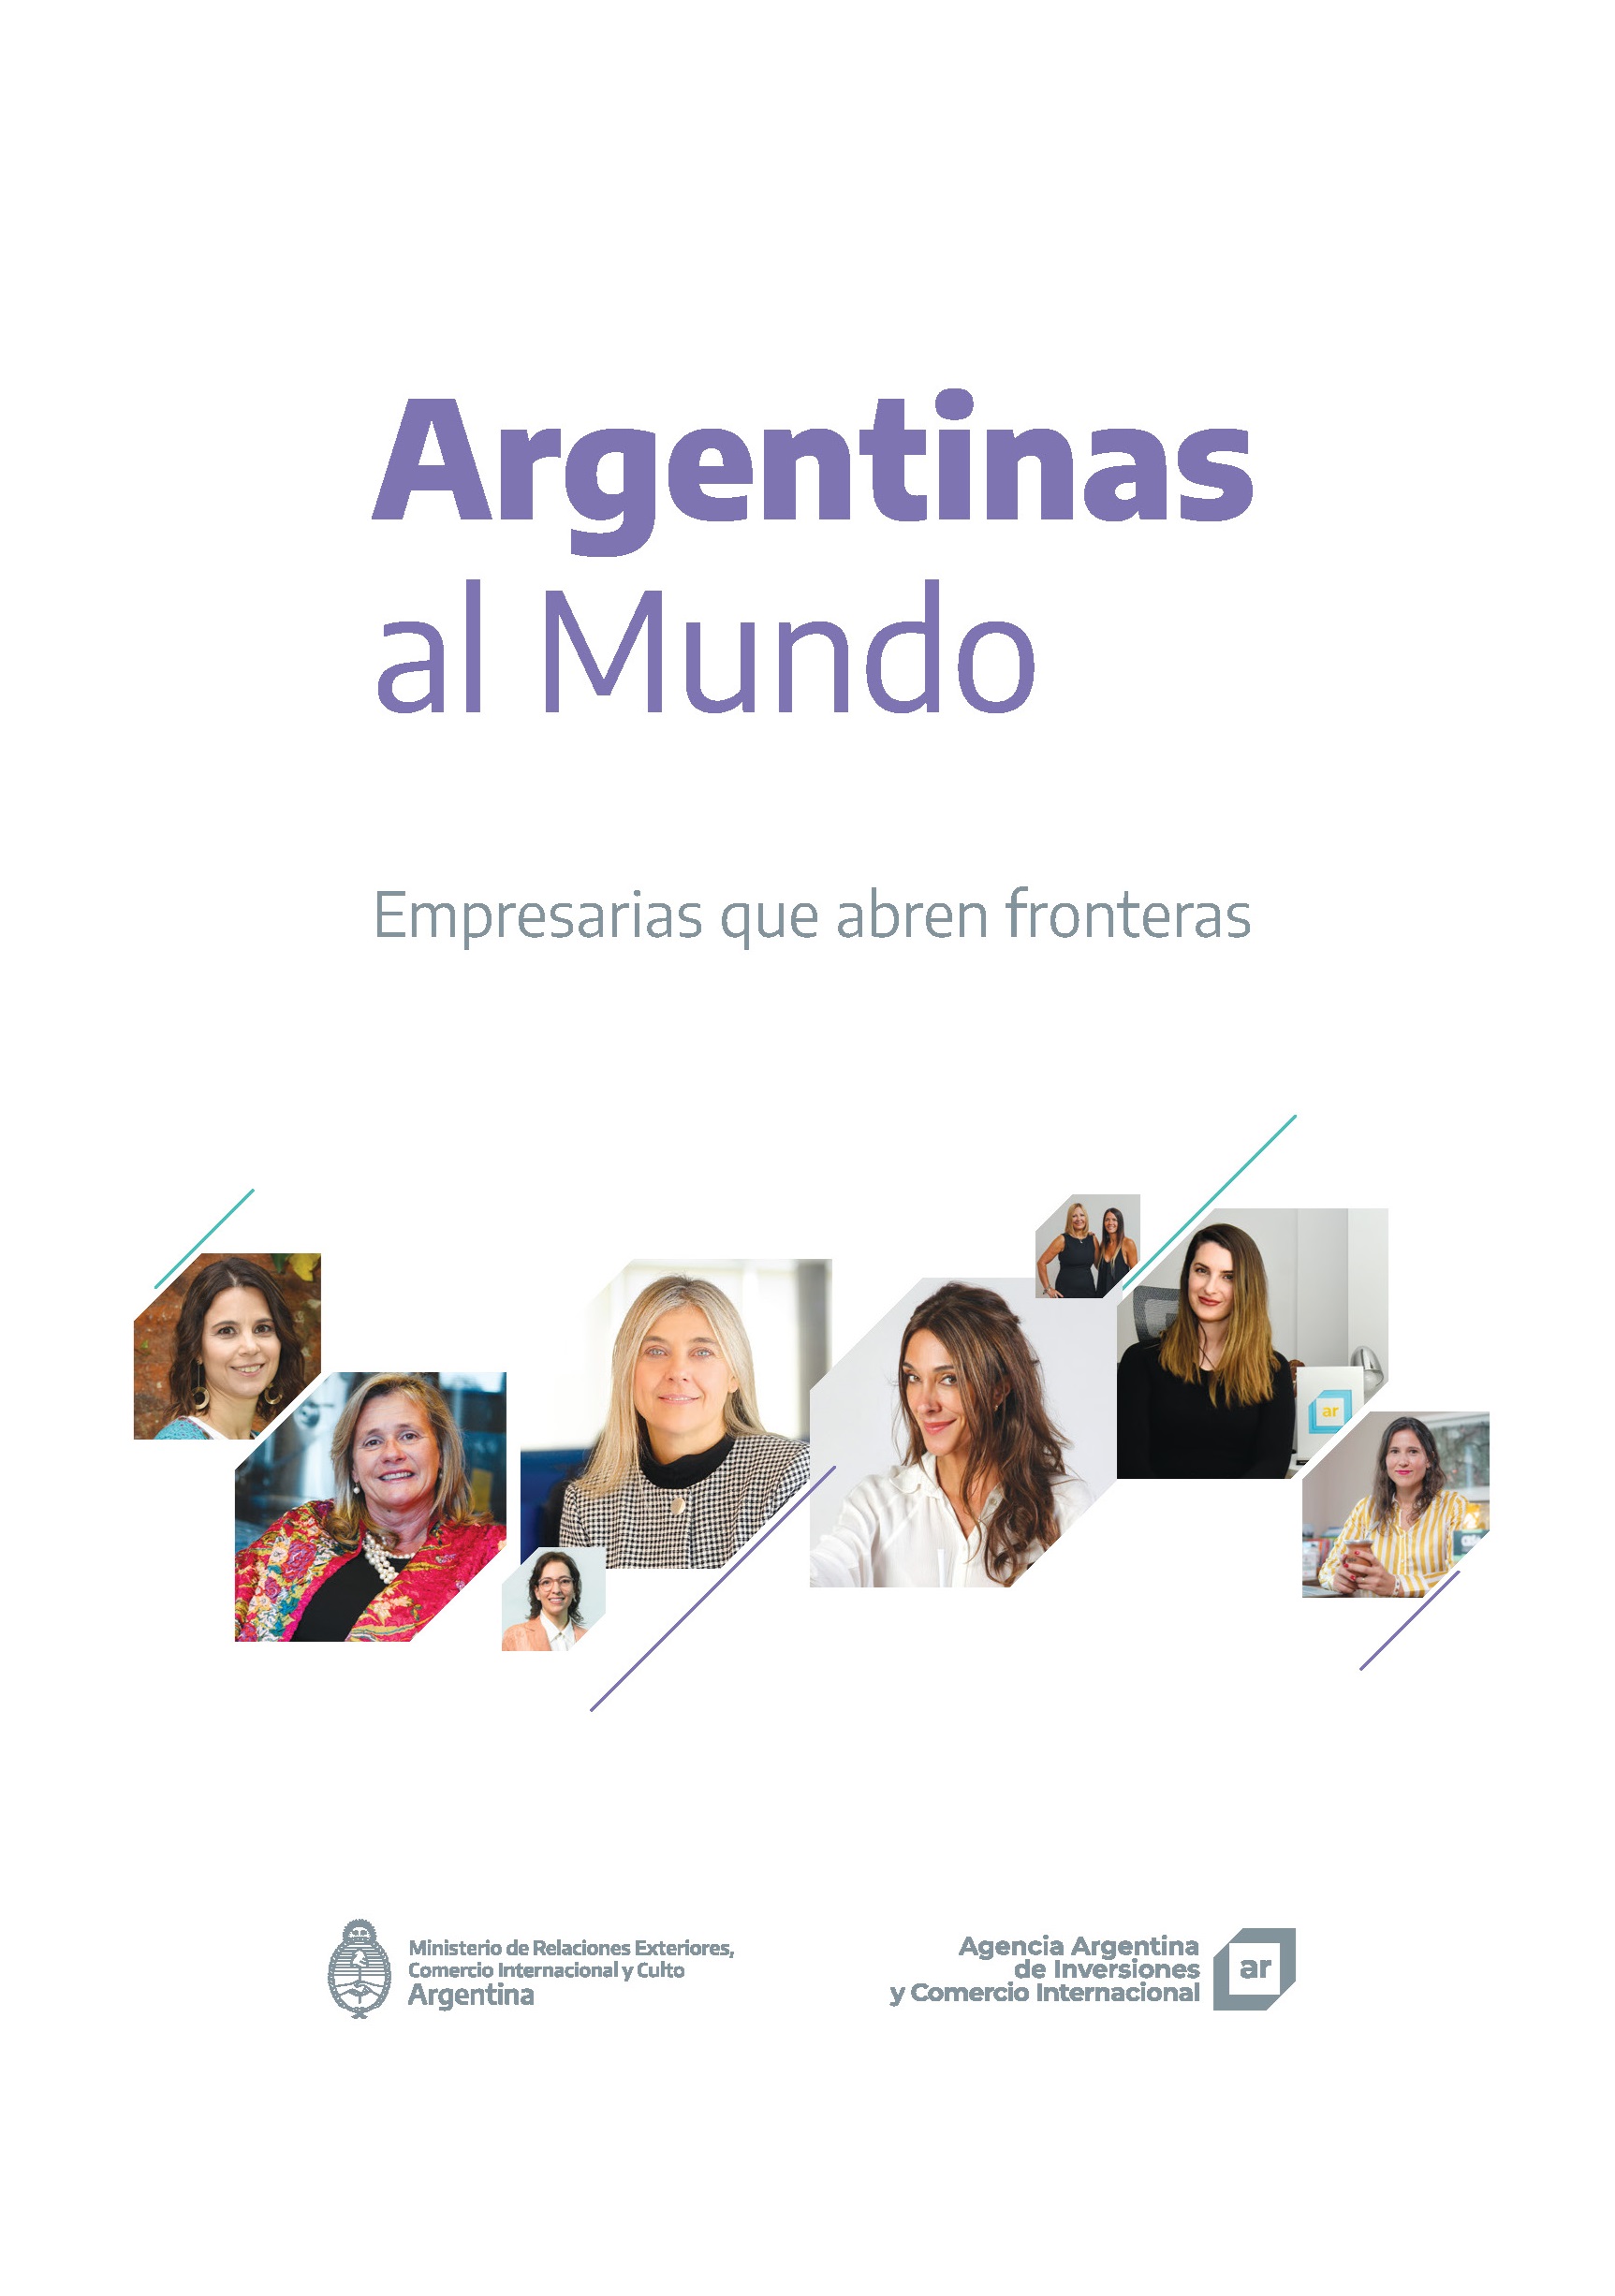 https://inversionycomercio.org.ar/images/publicaciones/Argentinas al Mundo. Empresarias que abren fronteras